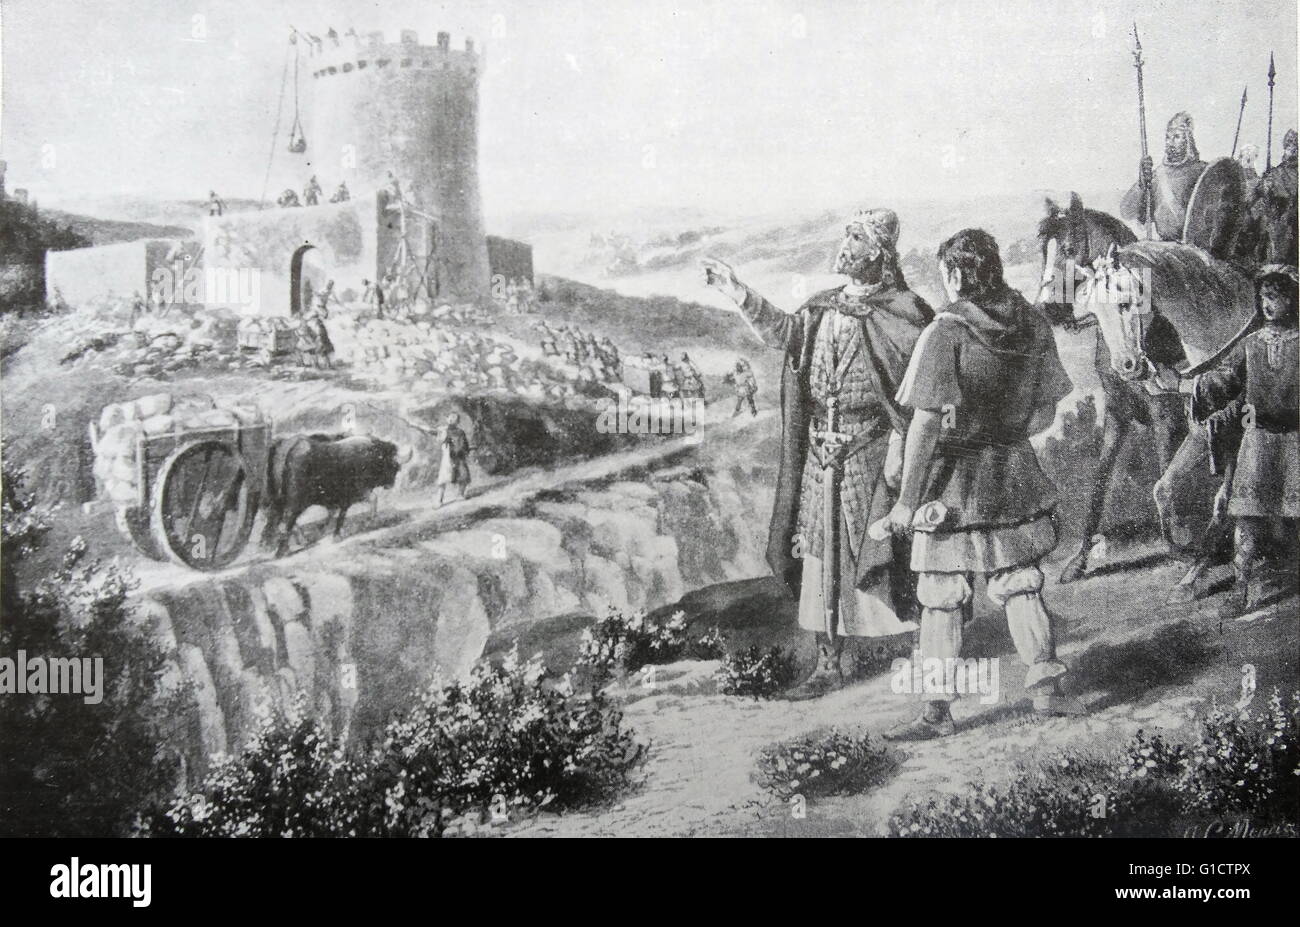 Leader Visigoth Pelagio (681-737)a dopo la battaglia di Covadonga 722 AD. Questo ha segnato una prima vittoria da un cristiano la forza militare in Iberia dopo la conquista musulmana di Hispania visigota in 711-718. considerata dagli storici come inizio della Reconquista Foto Stock